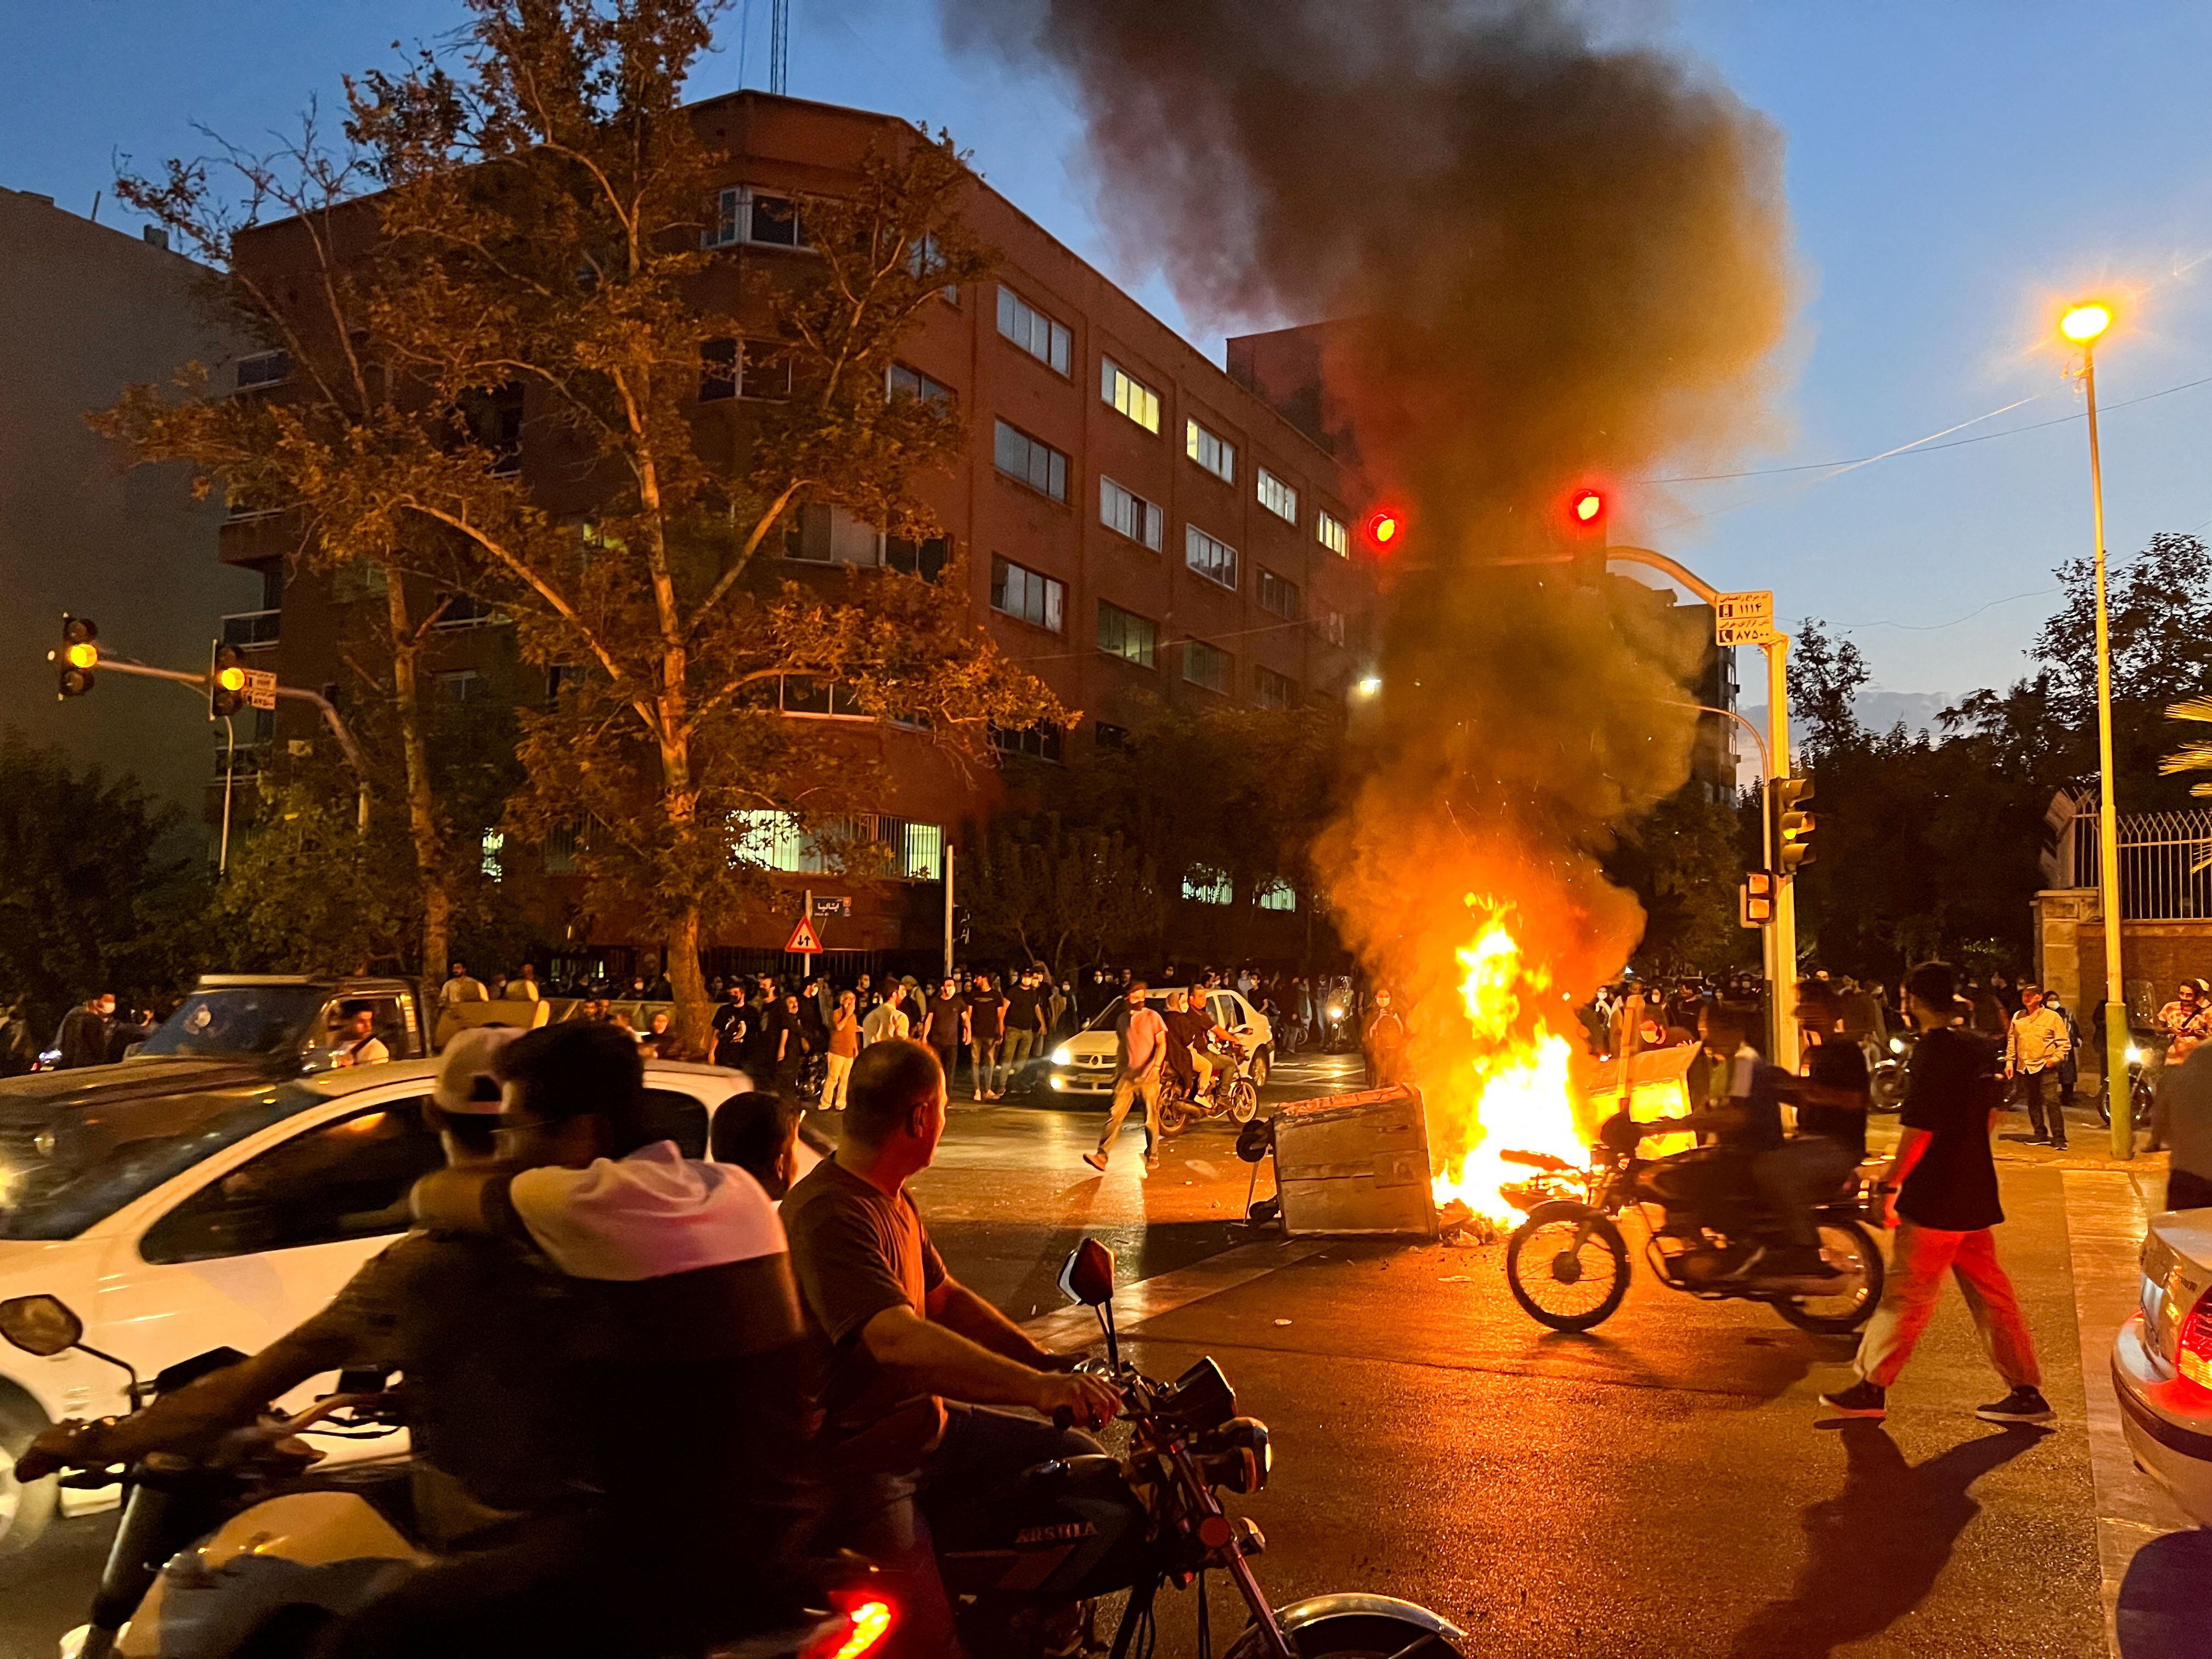 Una motocicleta de la policía arde durante una protesta por la muerte de Mahsa Amini, en Teherán, el 19 de septiembre de 2022 (West Asia News Agency via REUTERS)